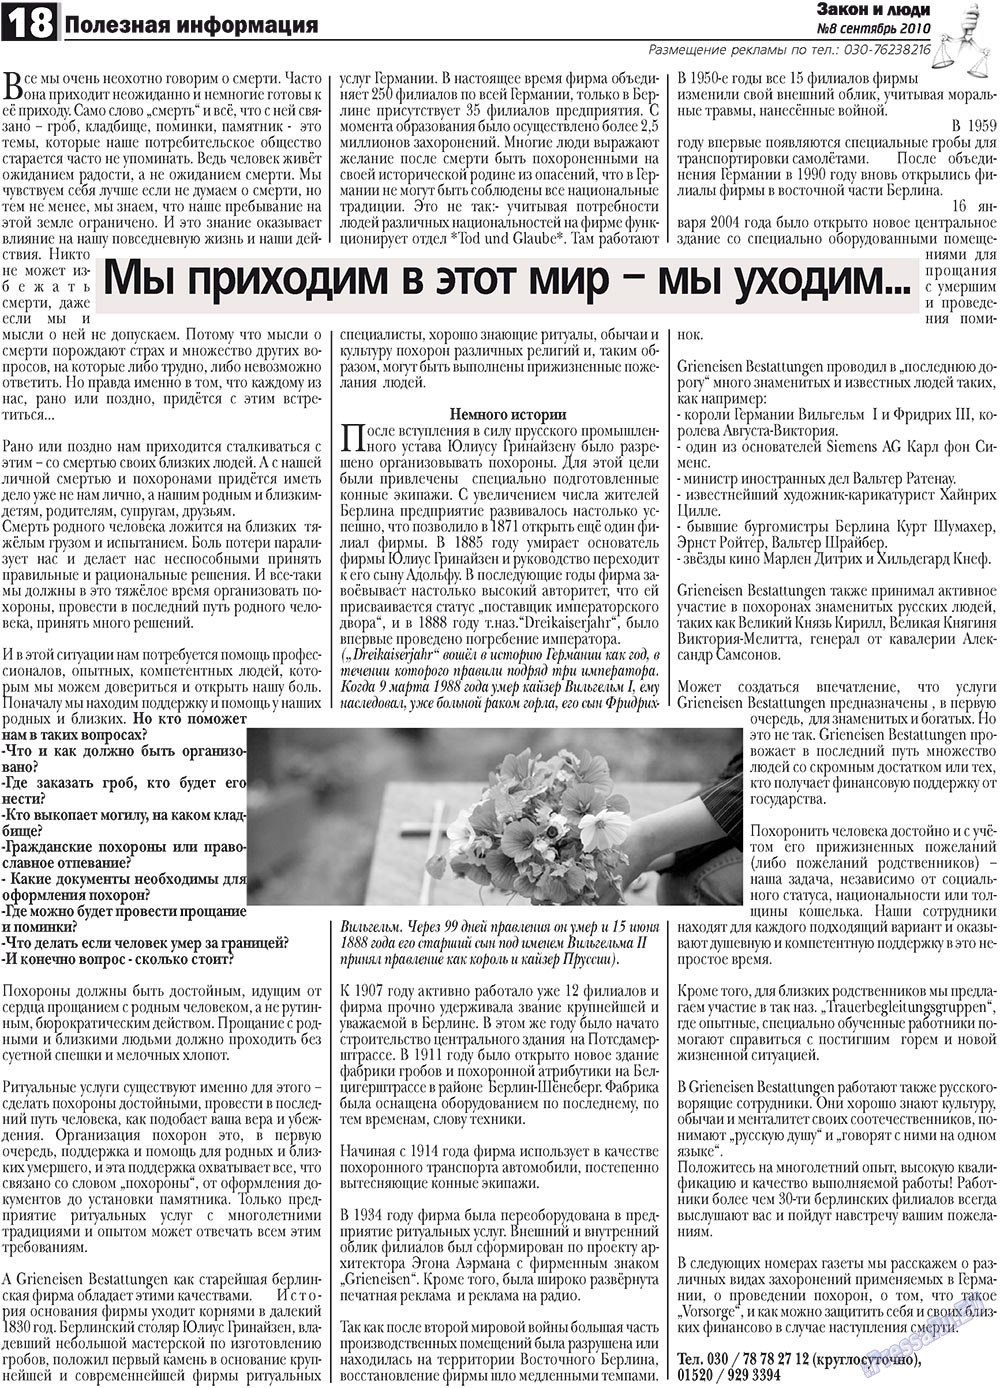 Закон и люди, газета. 2010 №8 стр.18